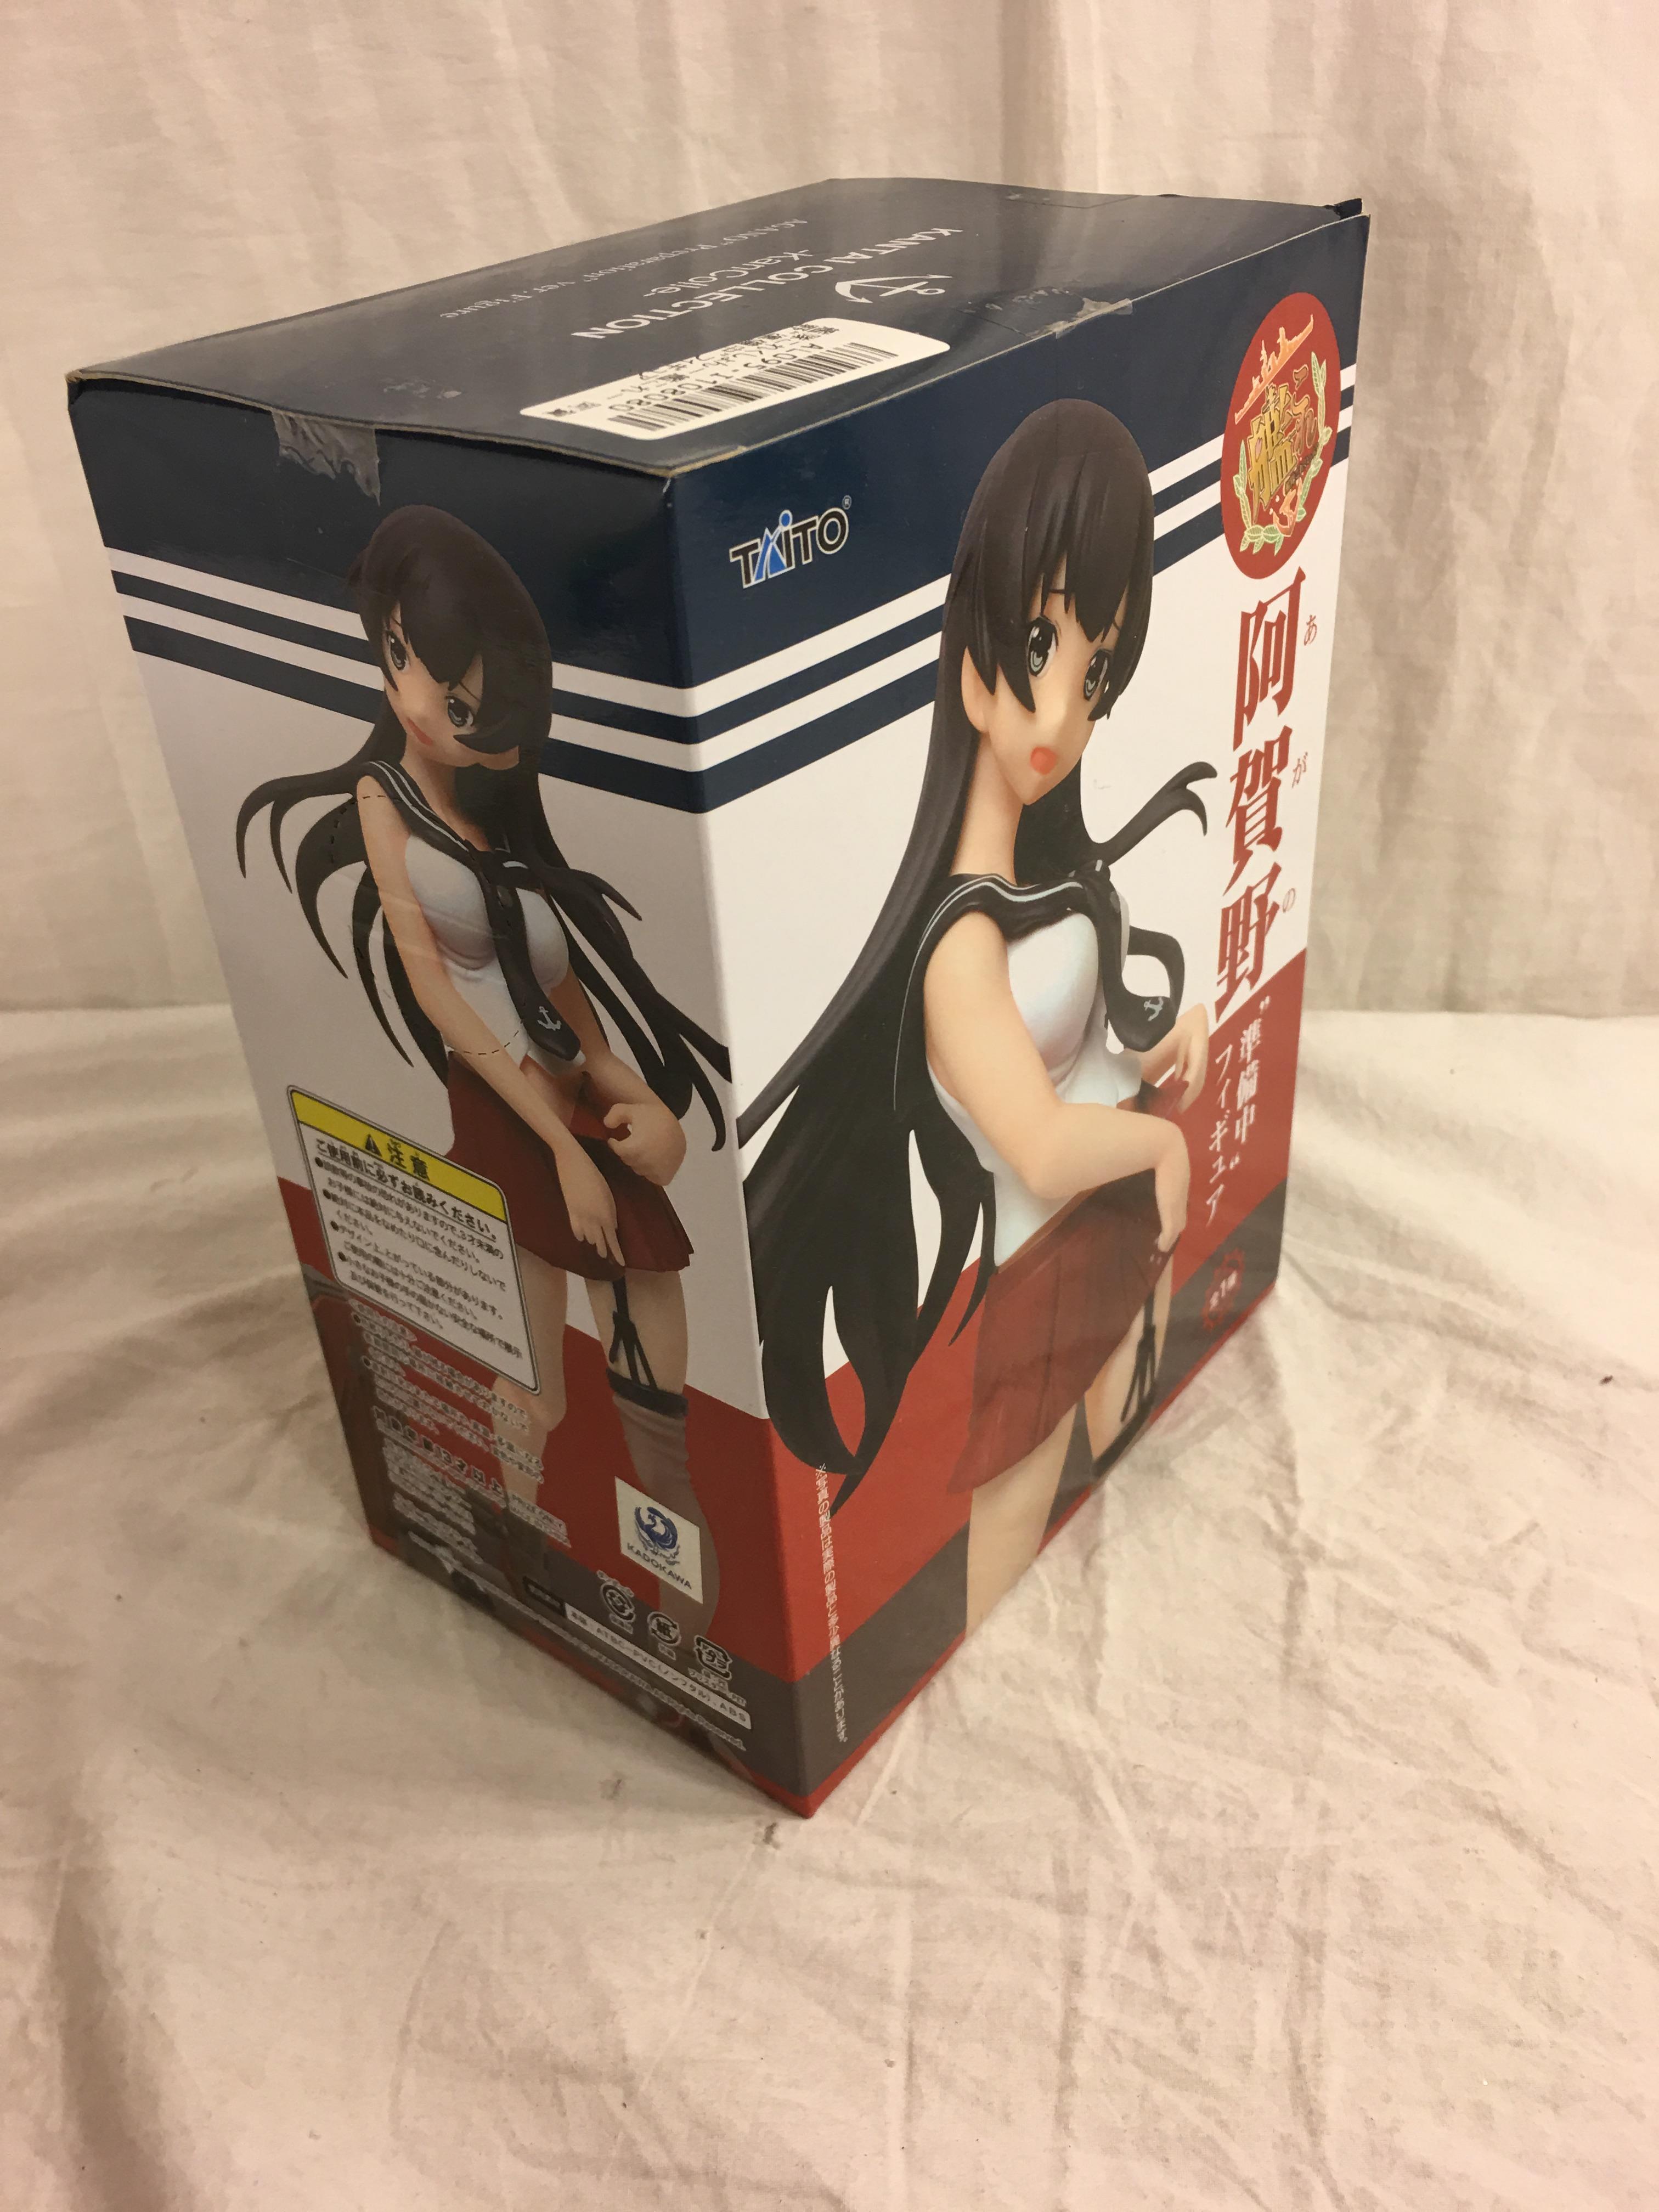 New Collector JAMMA Agano Figure Preparation Ver. anime Kantai Collection Kan Colle TAITO 8"Box